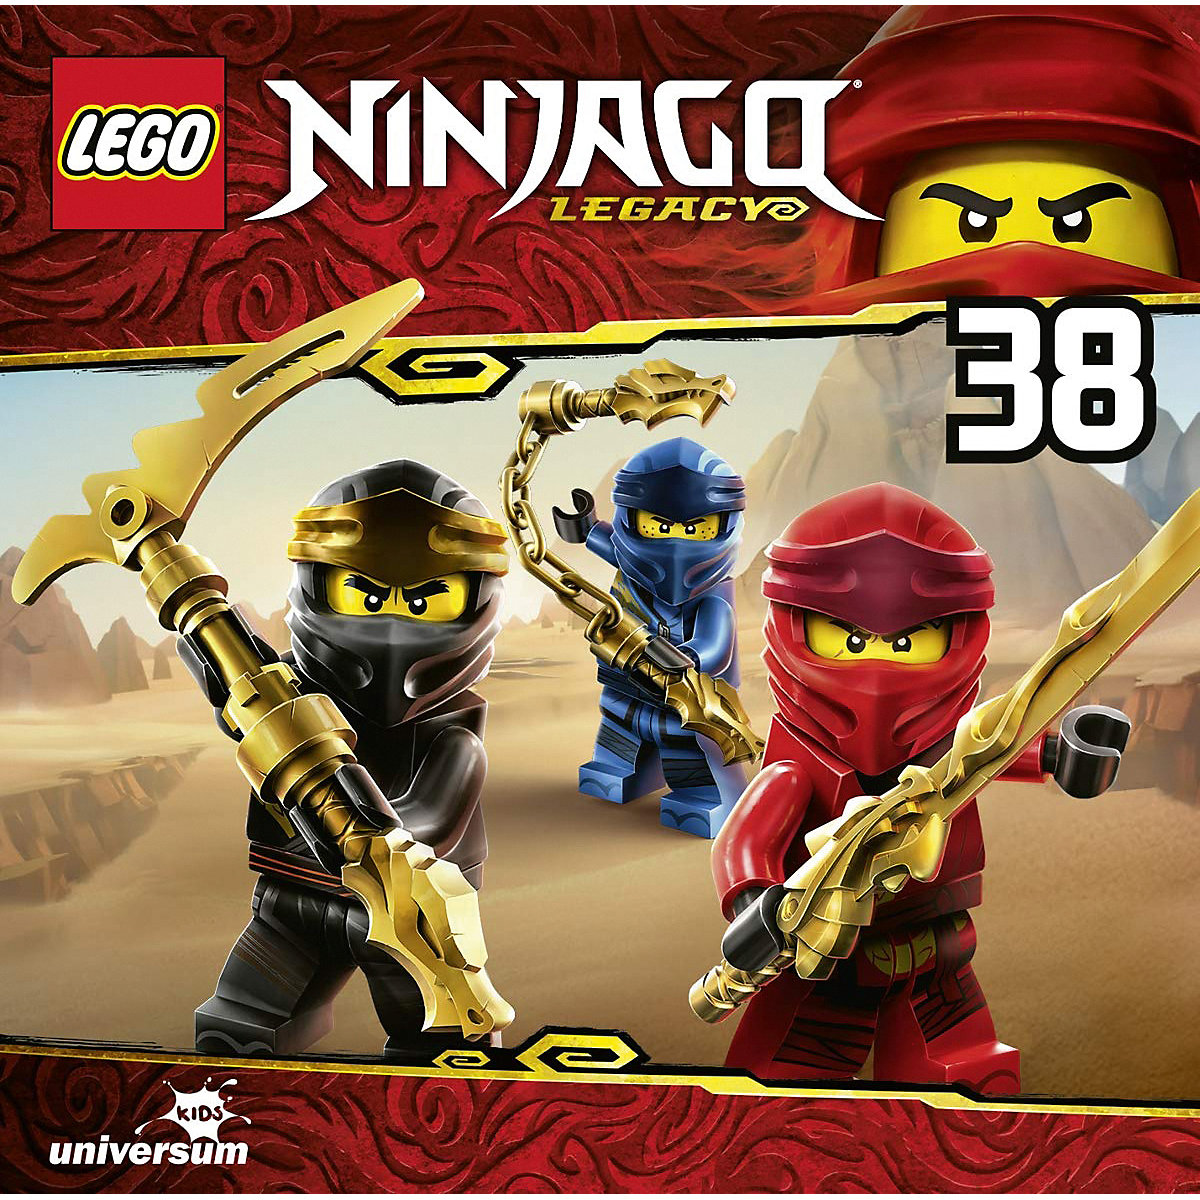 CD LEGO Ninjago 38